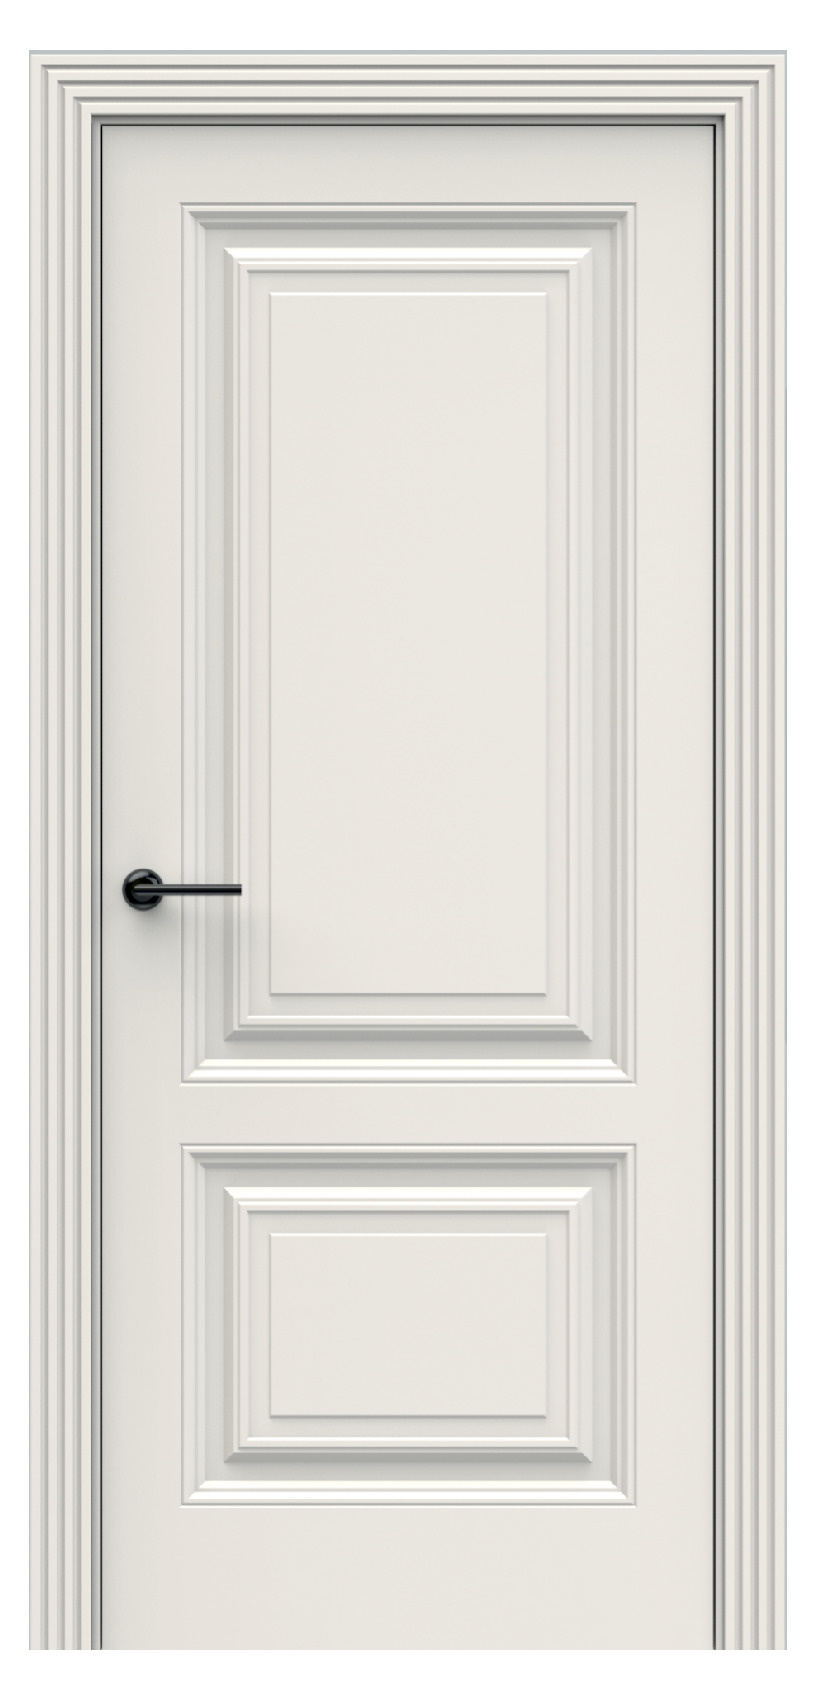 Questdoors Межкомнатная дверь QBR1, арт. 17914 - фото №1